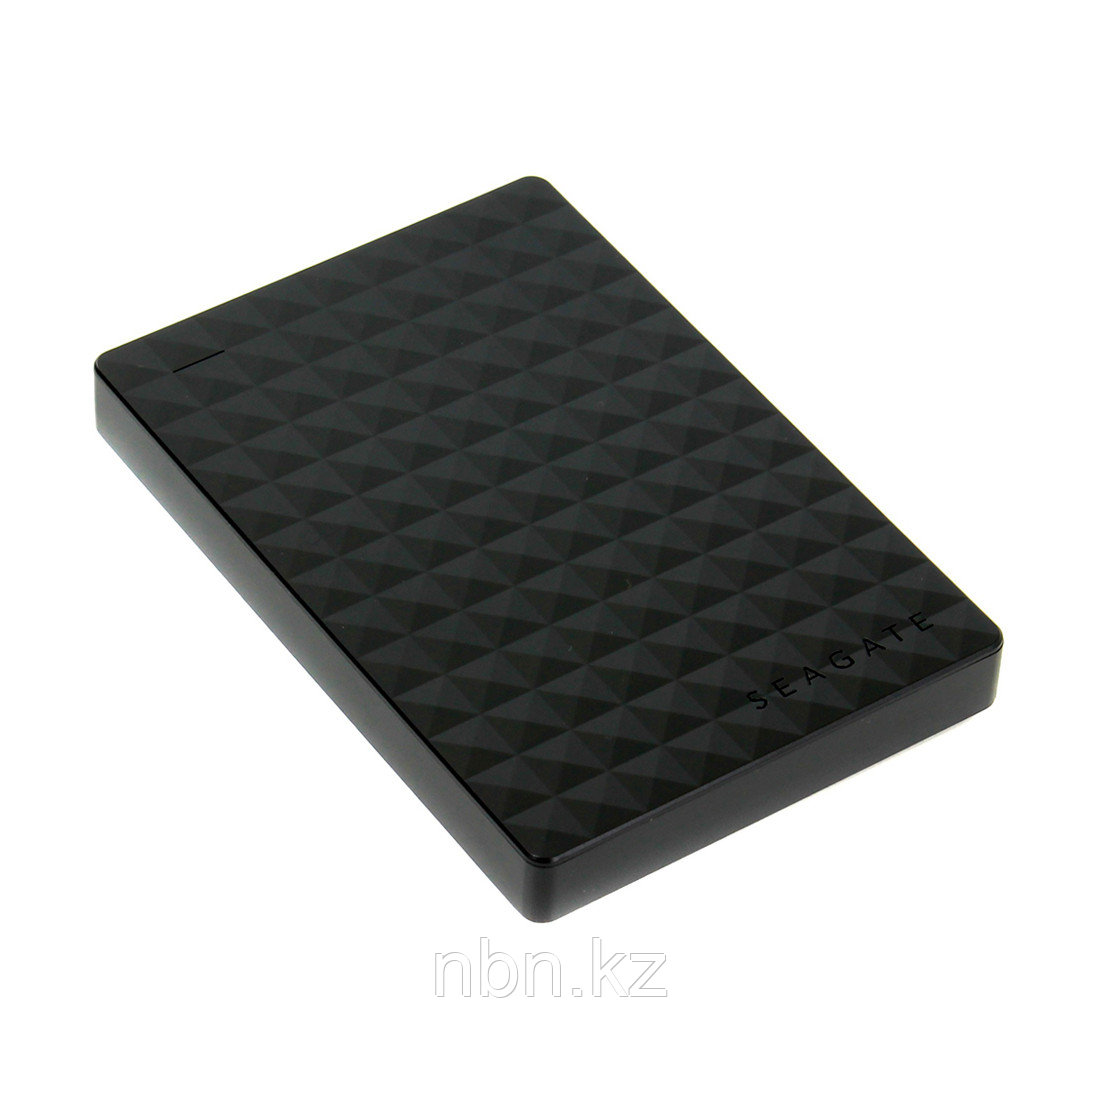 Внешний жёсткий диск Seagate 1TB 2.5" Expansion Portable STEA1000400 USB 3.0 Чёрный